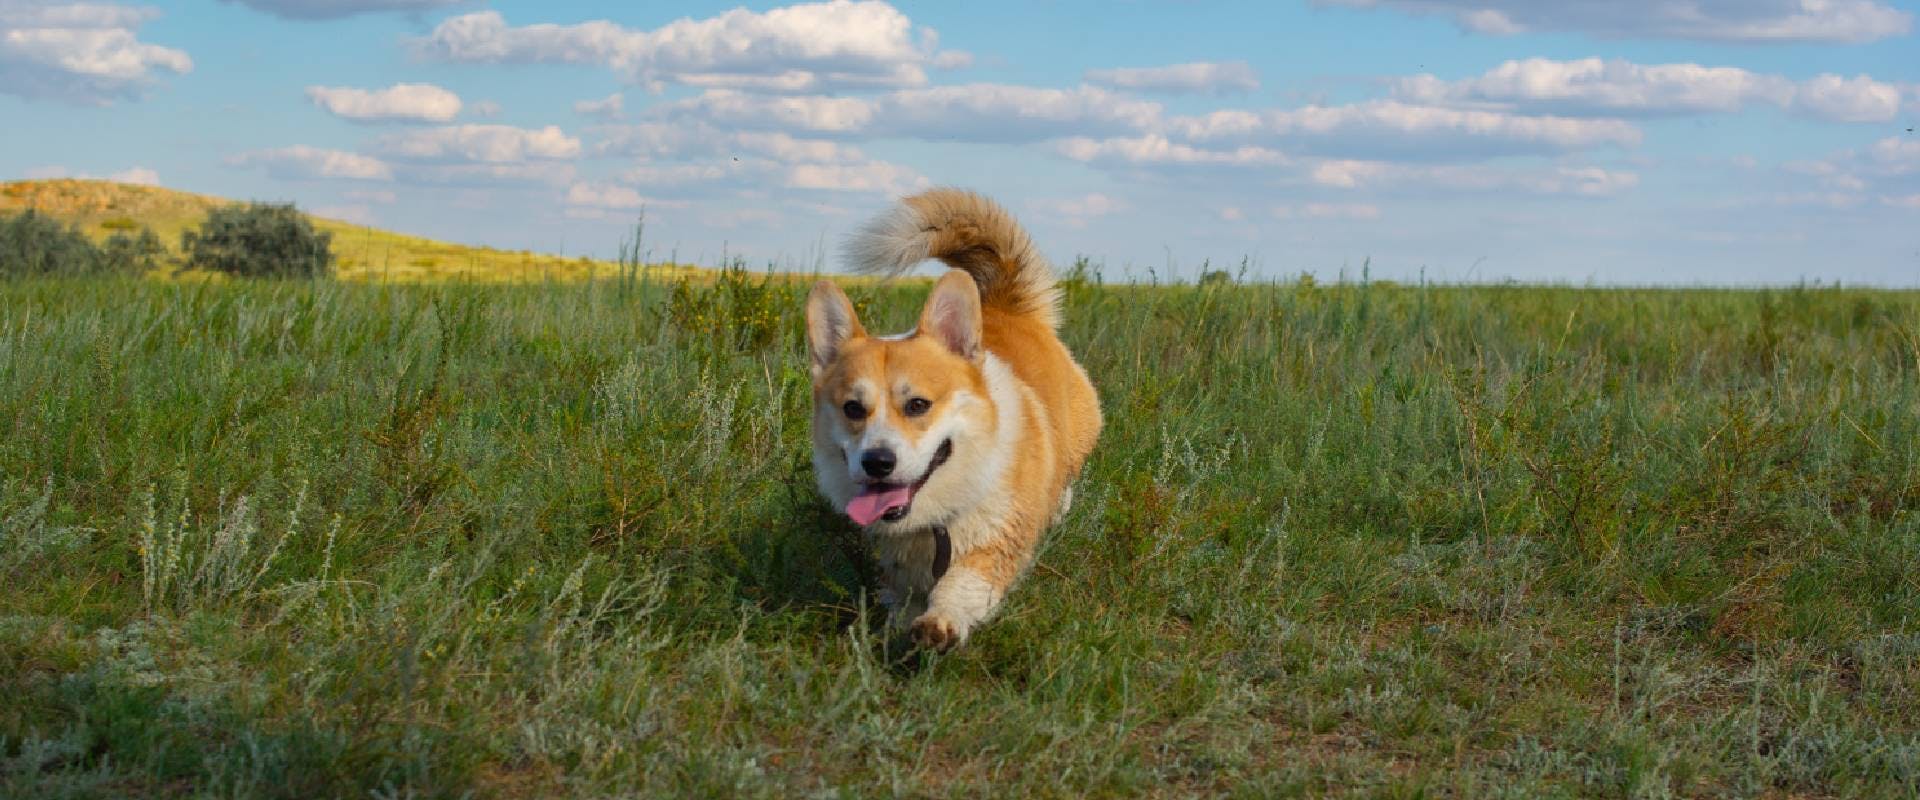 Corgi running in a field